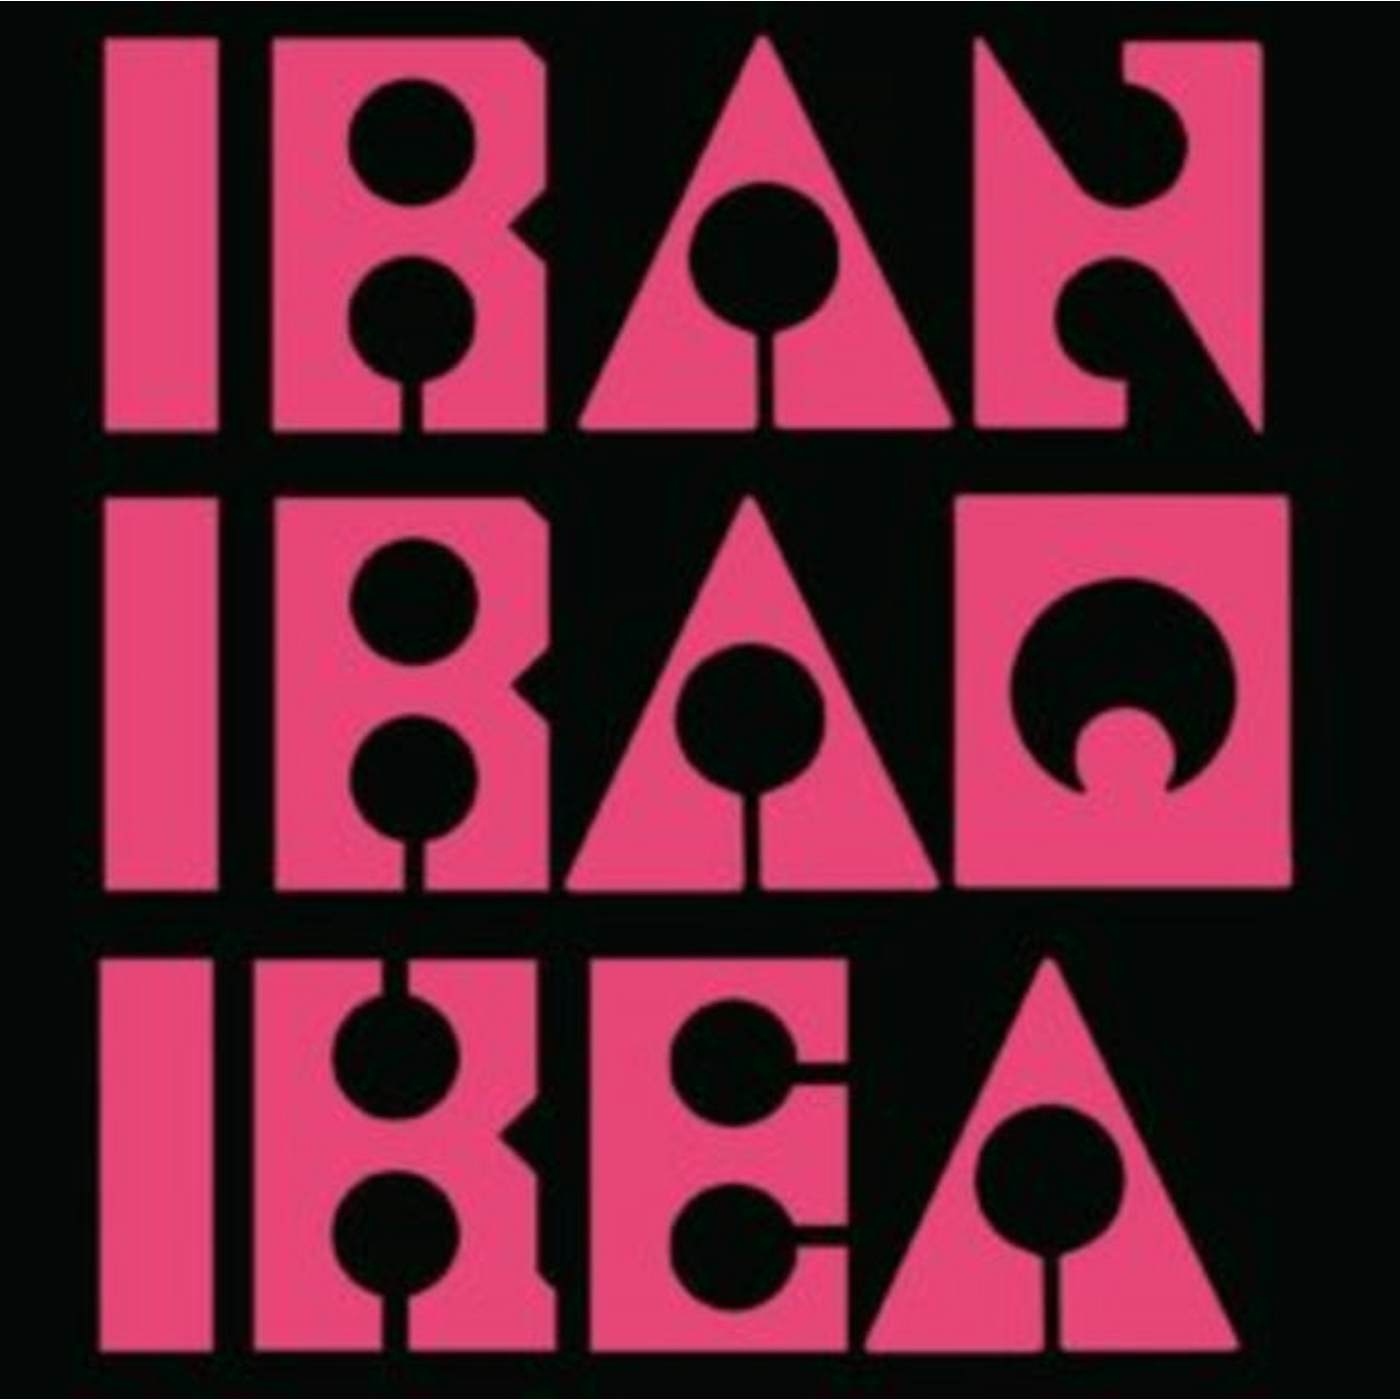 Les Big Byrd LP - Iran Iraq Ikea (Vinyl)